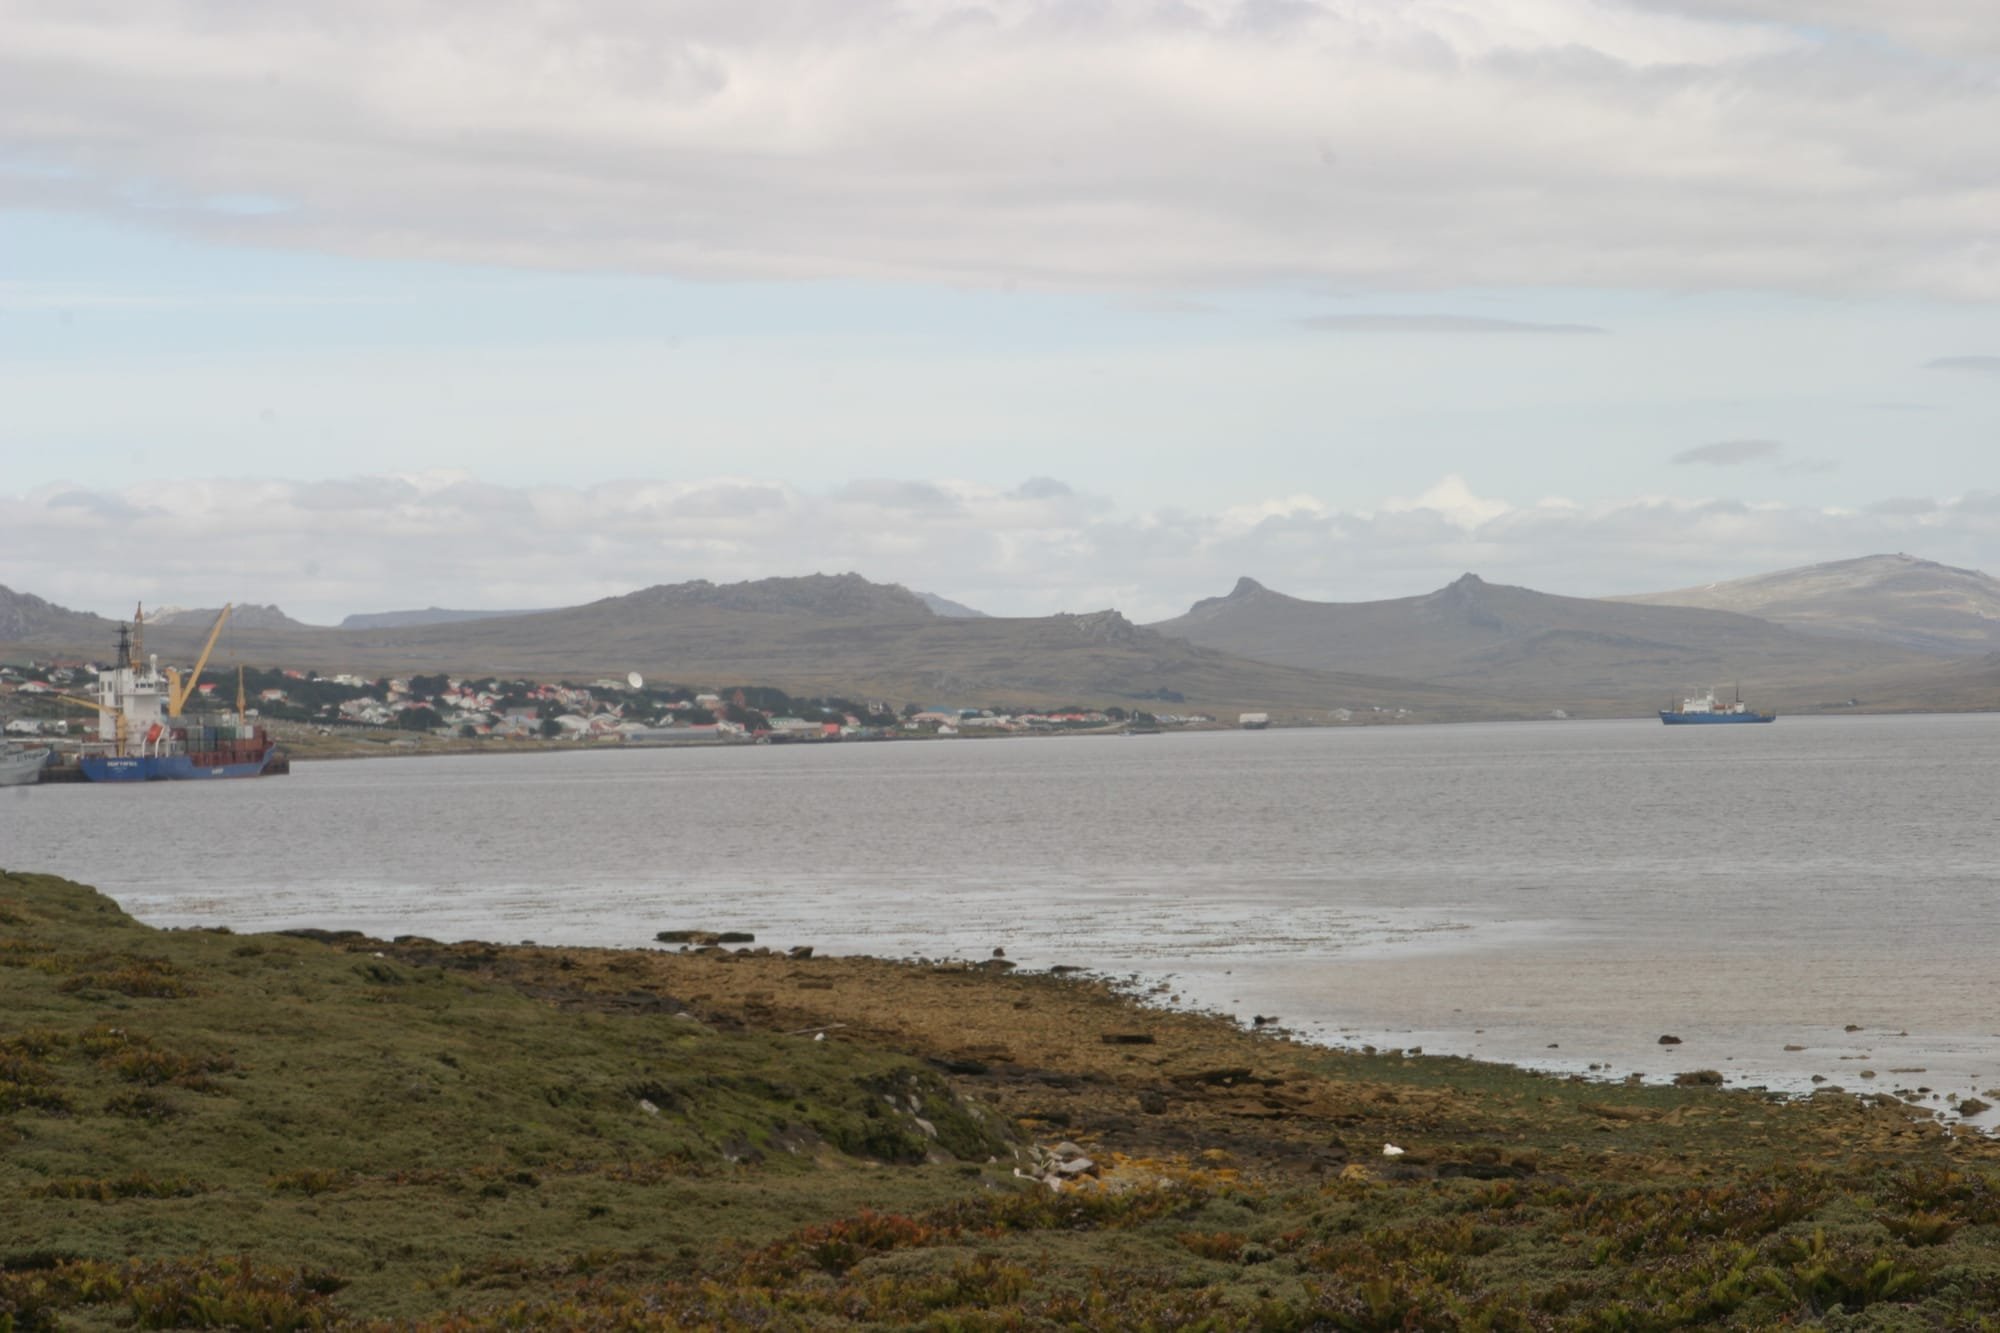 Port Stanley, East Falkland